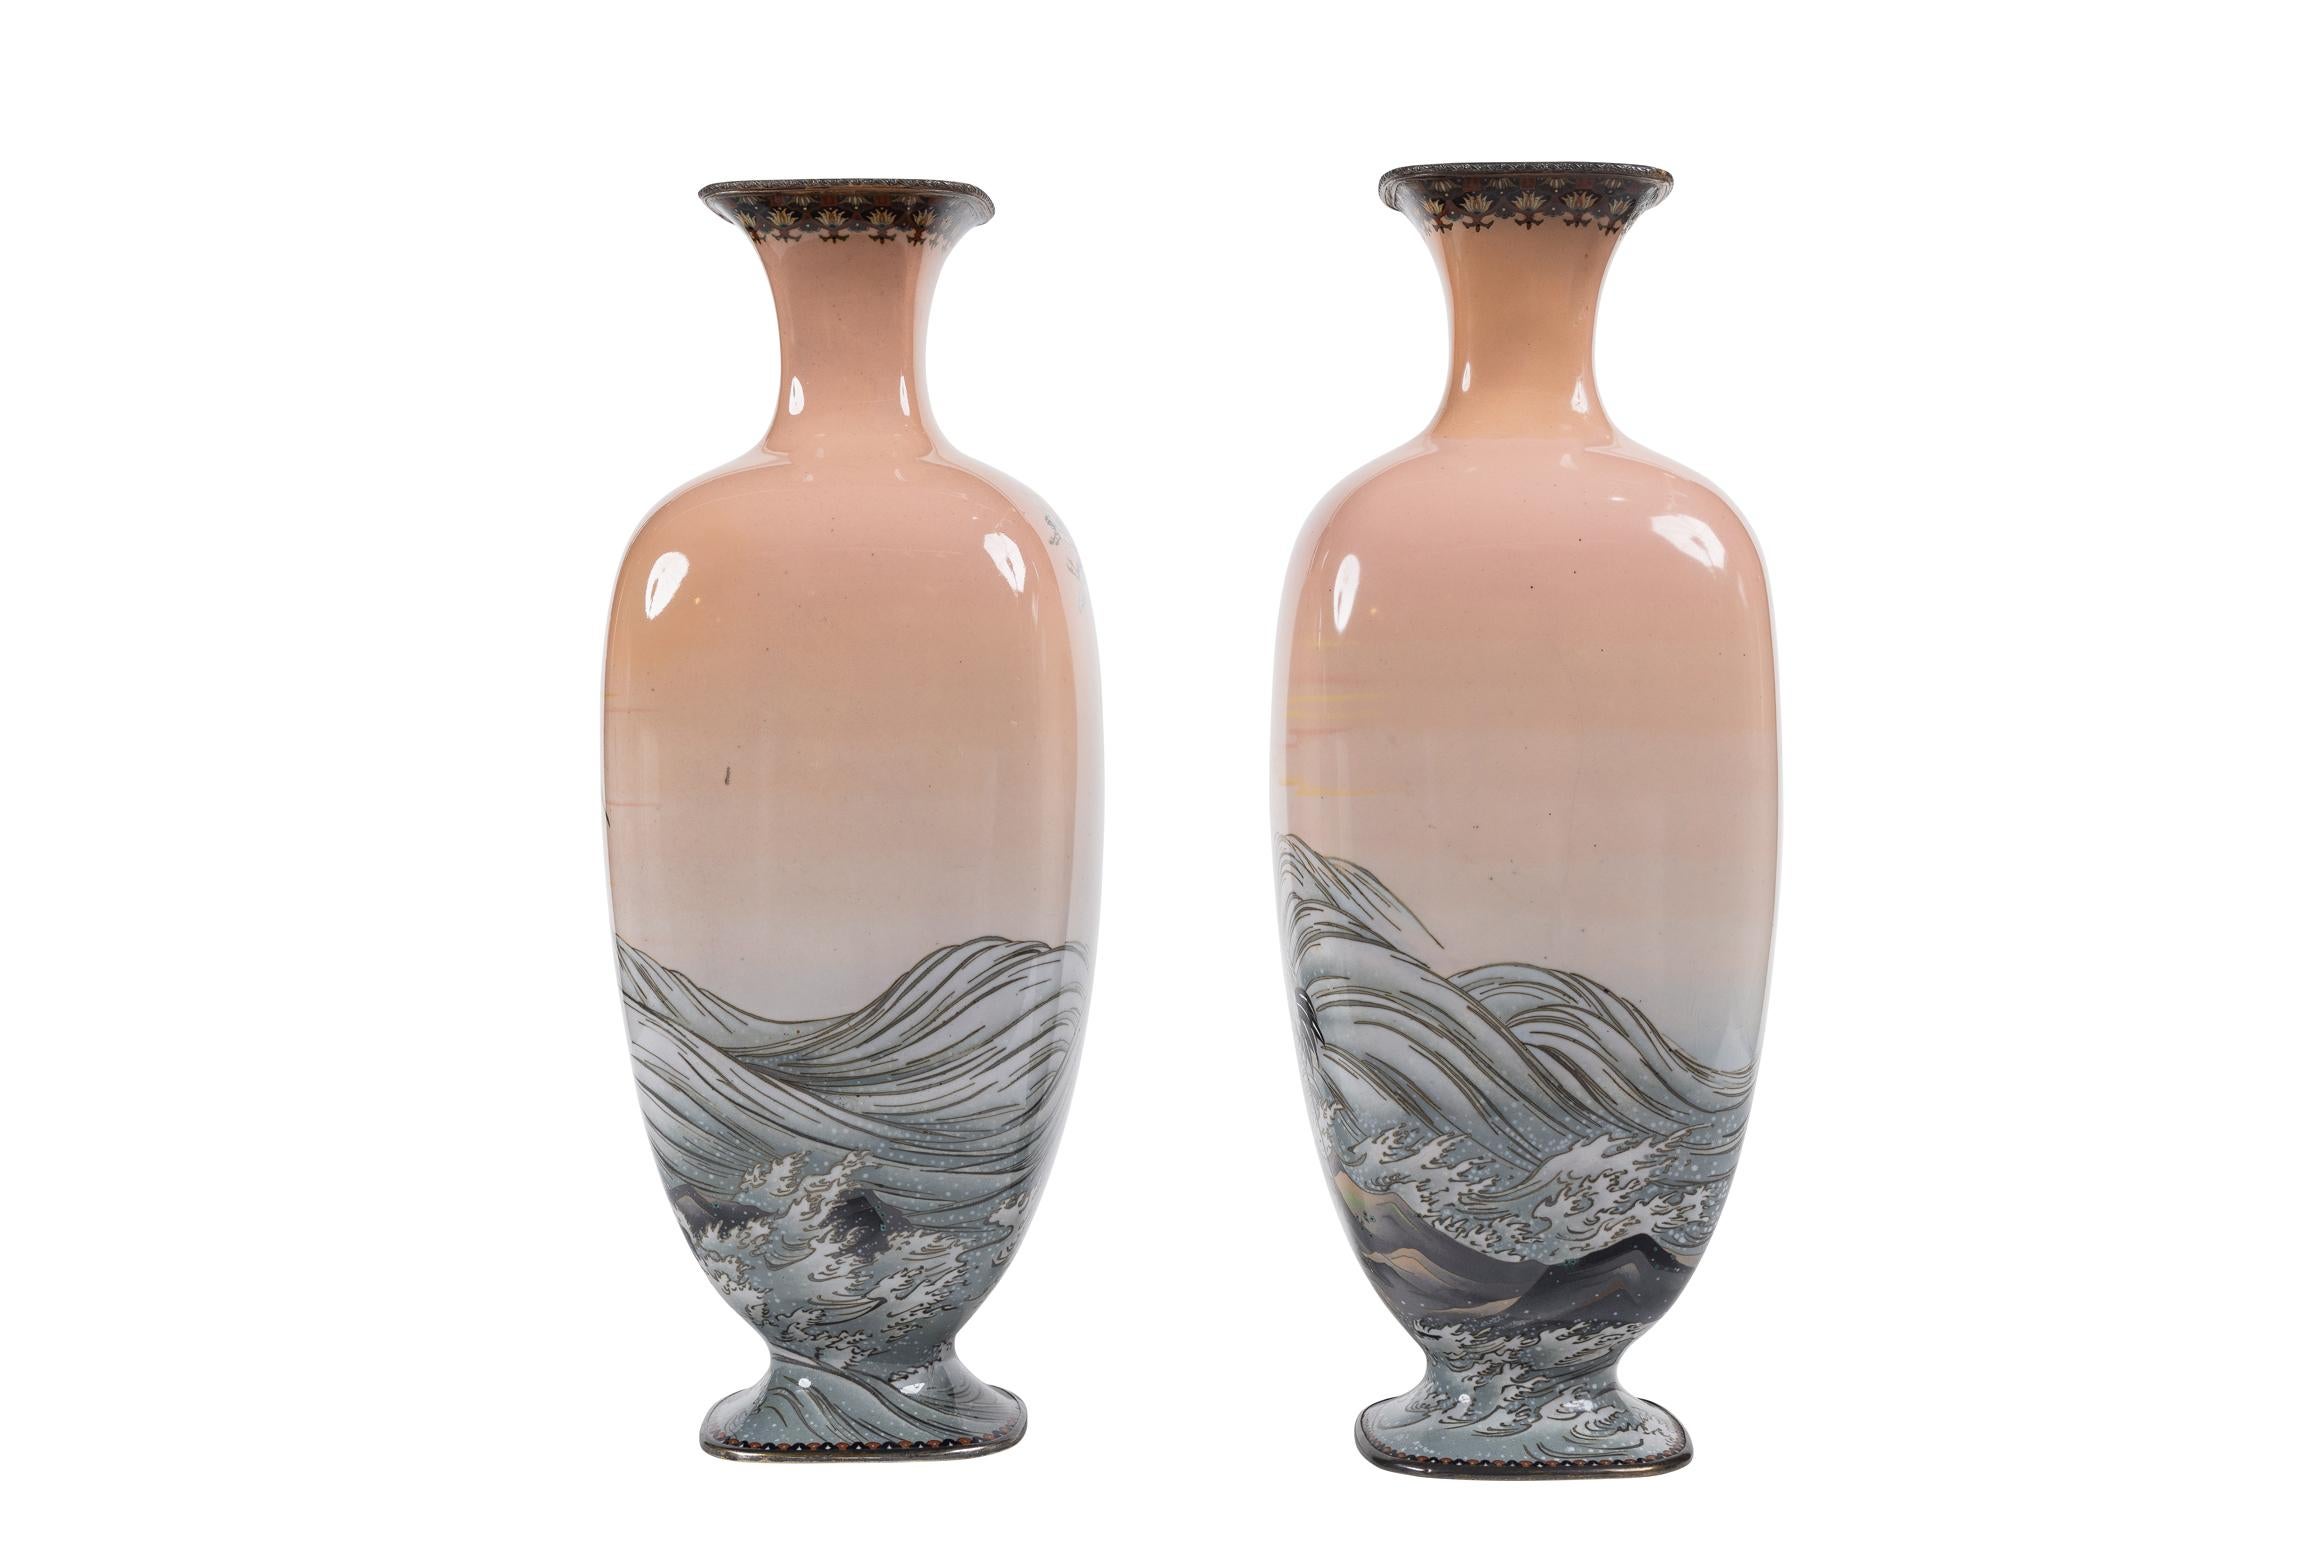 Nous présentons une paire de vases à fond rose en émail cloisonné d'époque Meiji, attribués à l'artiste renommé Hayashi Kodenji, vraiment captivante et de grande collection. Ces vases exceptionnels incarnent l'art et la sophistication du travail du